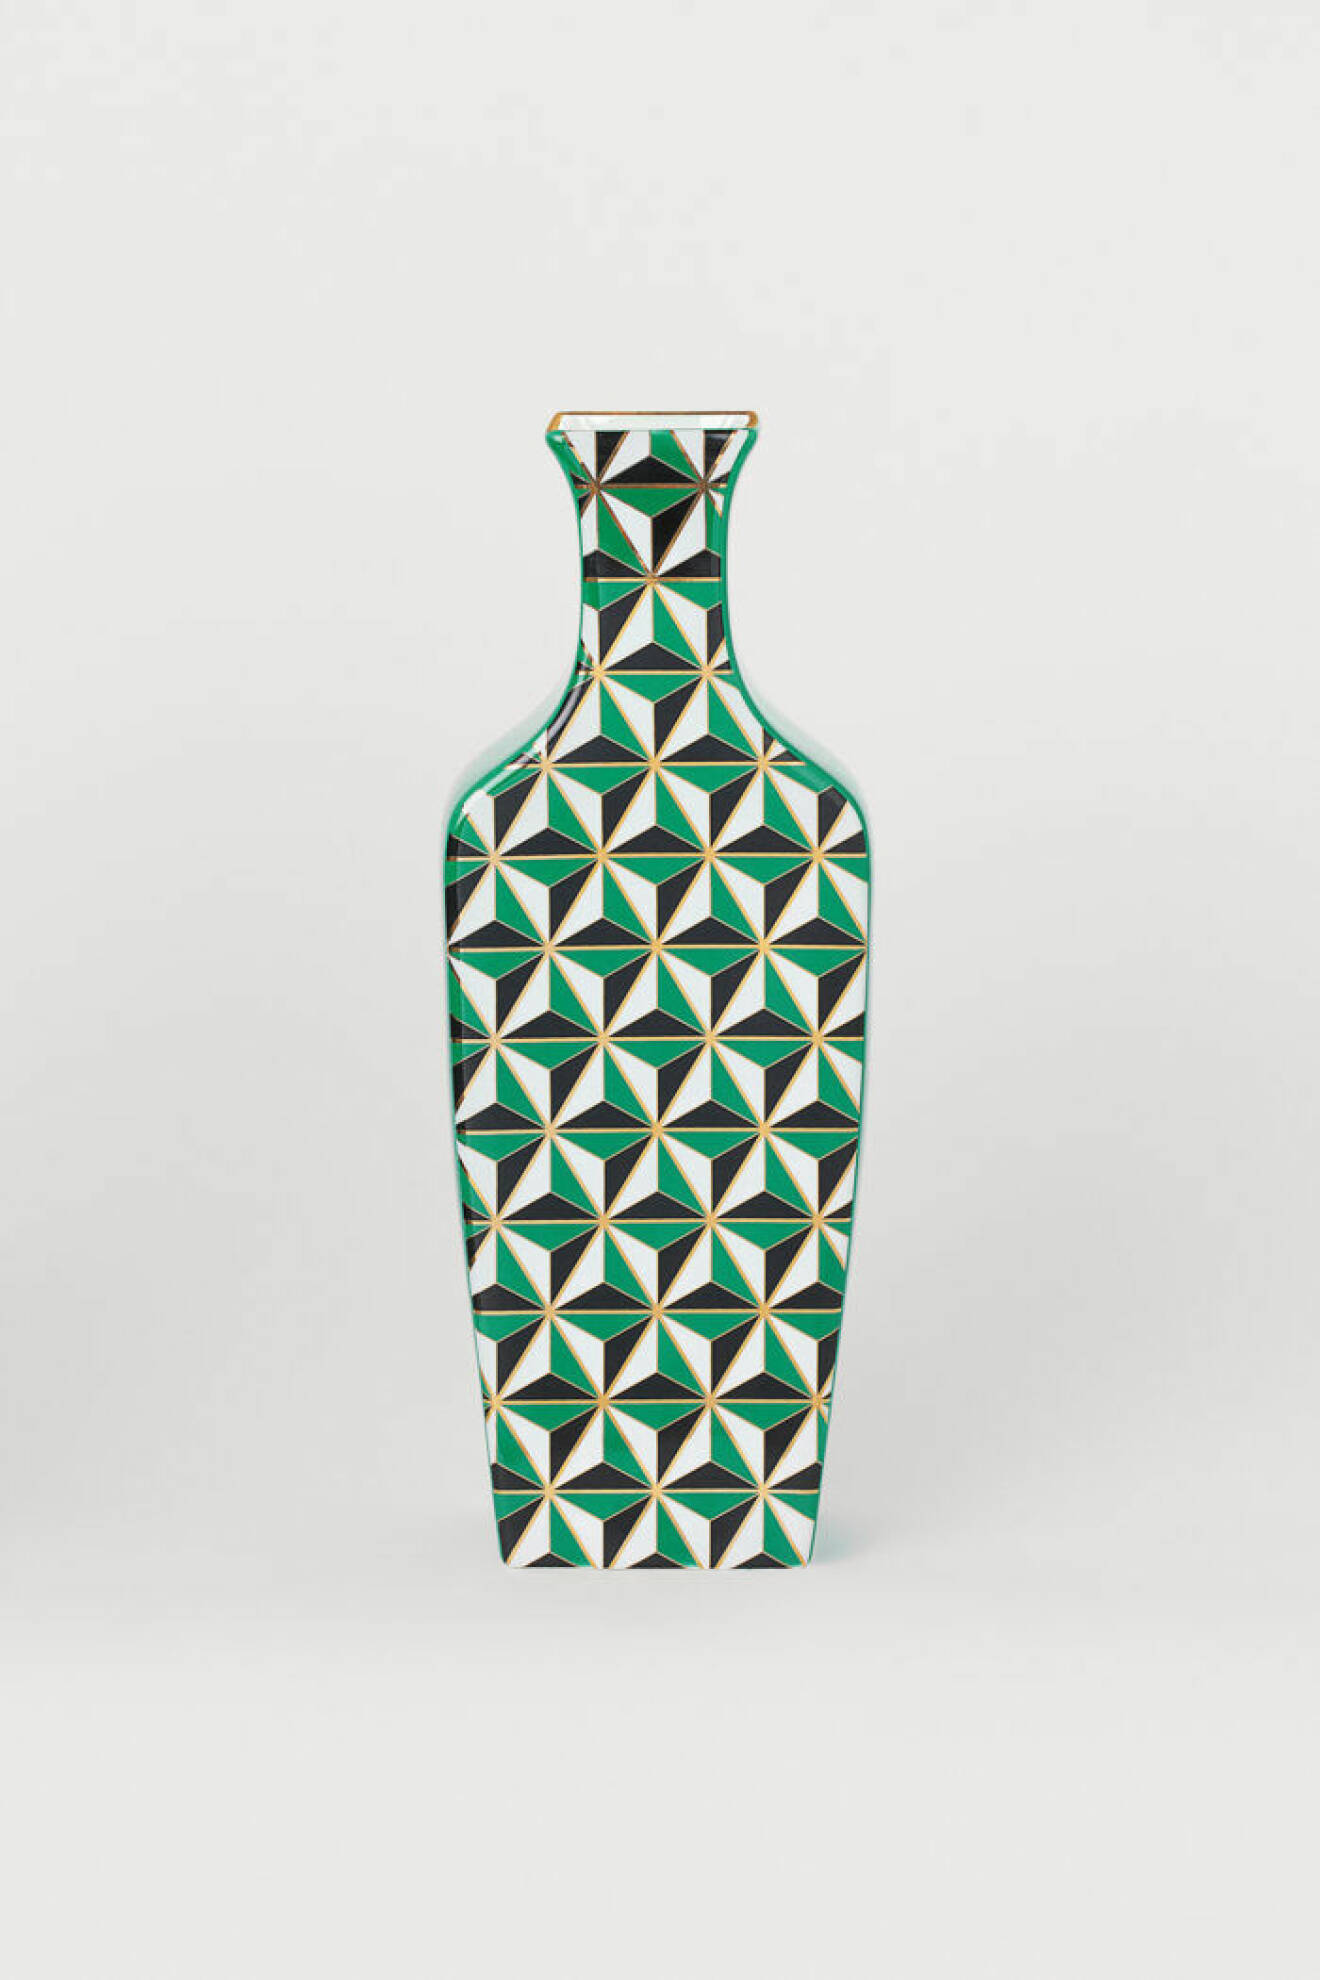 Mönstrad vas i grönt, vitt och svart från Jonathan Adler x H&M